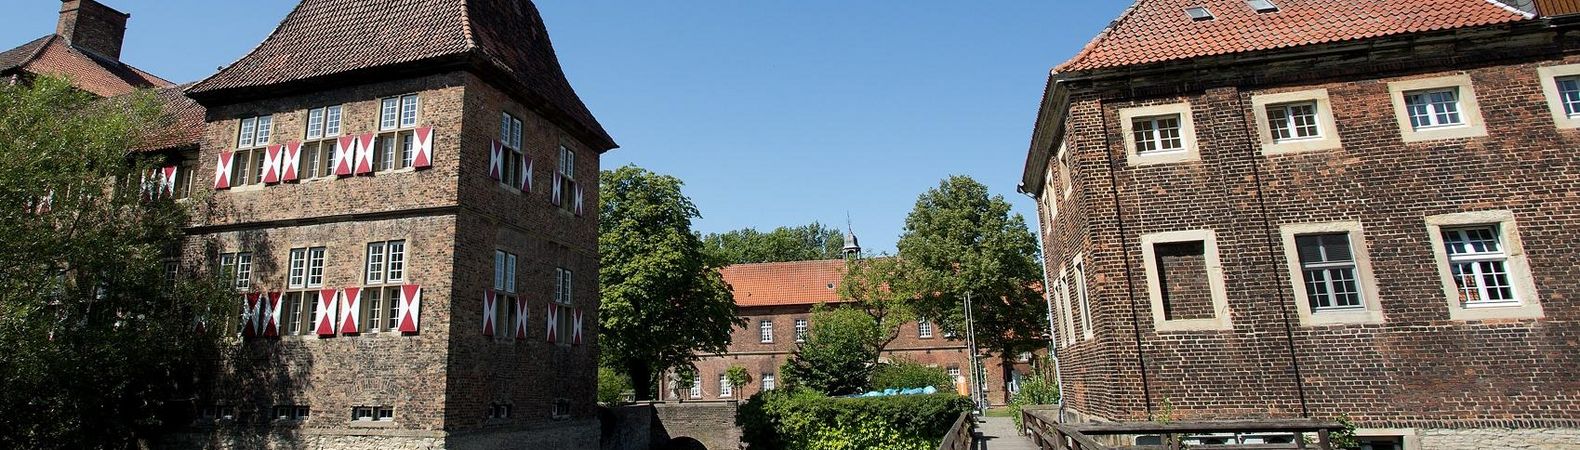 Schloss Oberwerries in Hamm